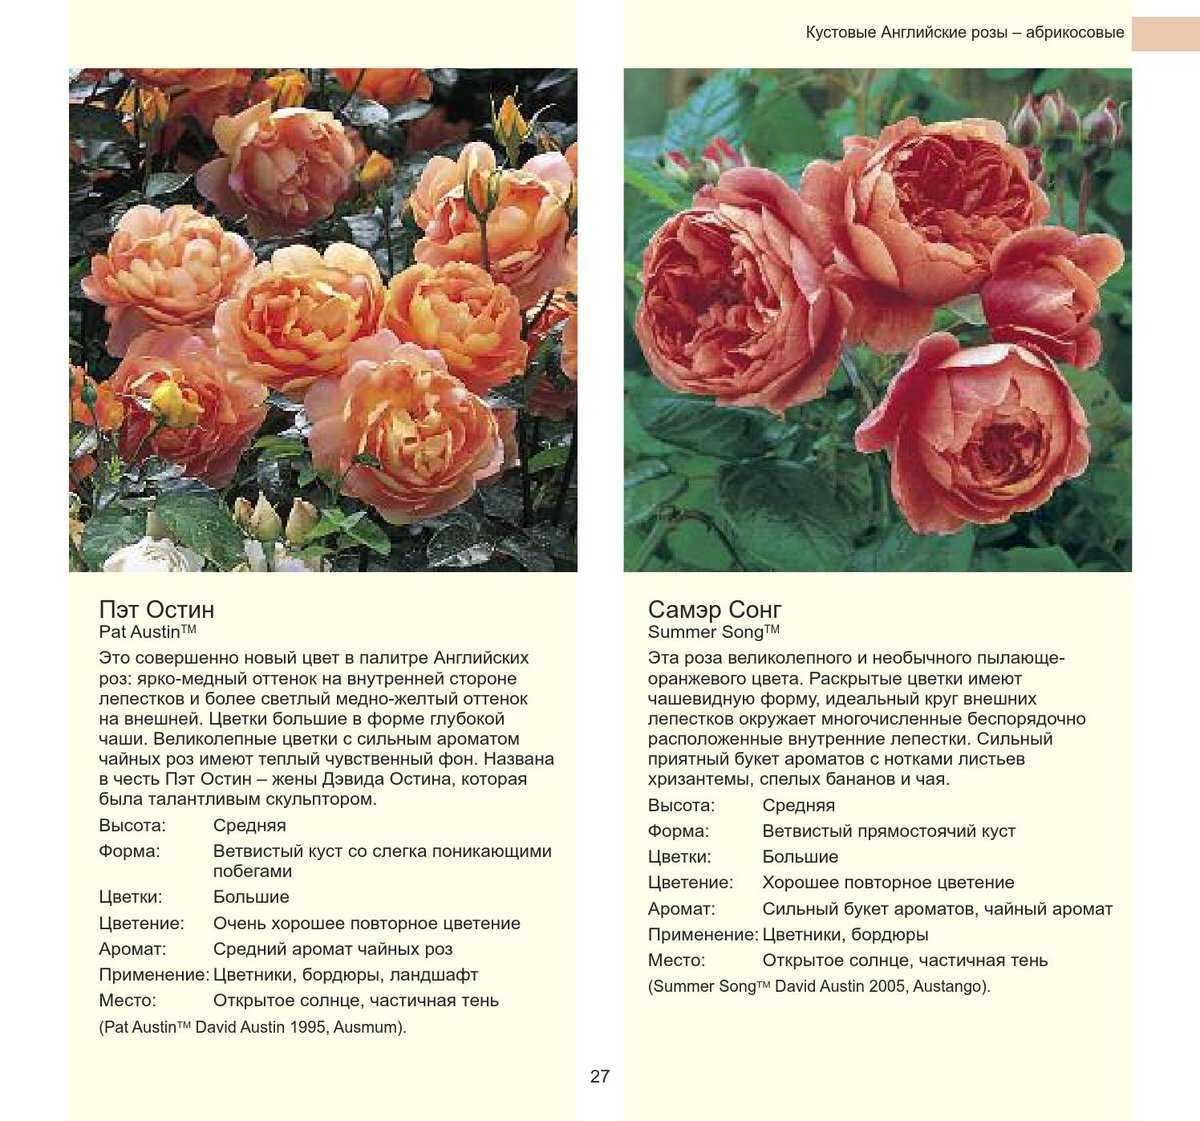 Розы дэвида остина: описание, лучшие сорта, отзывы